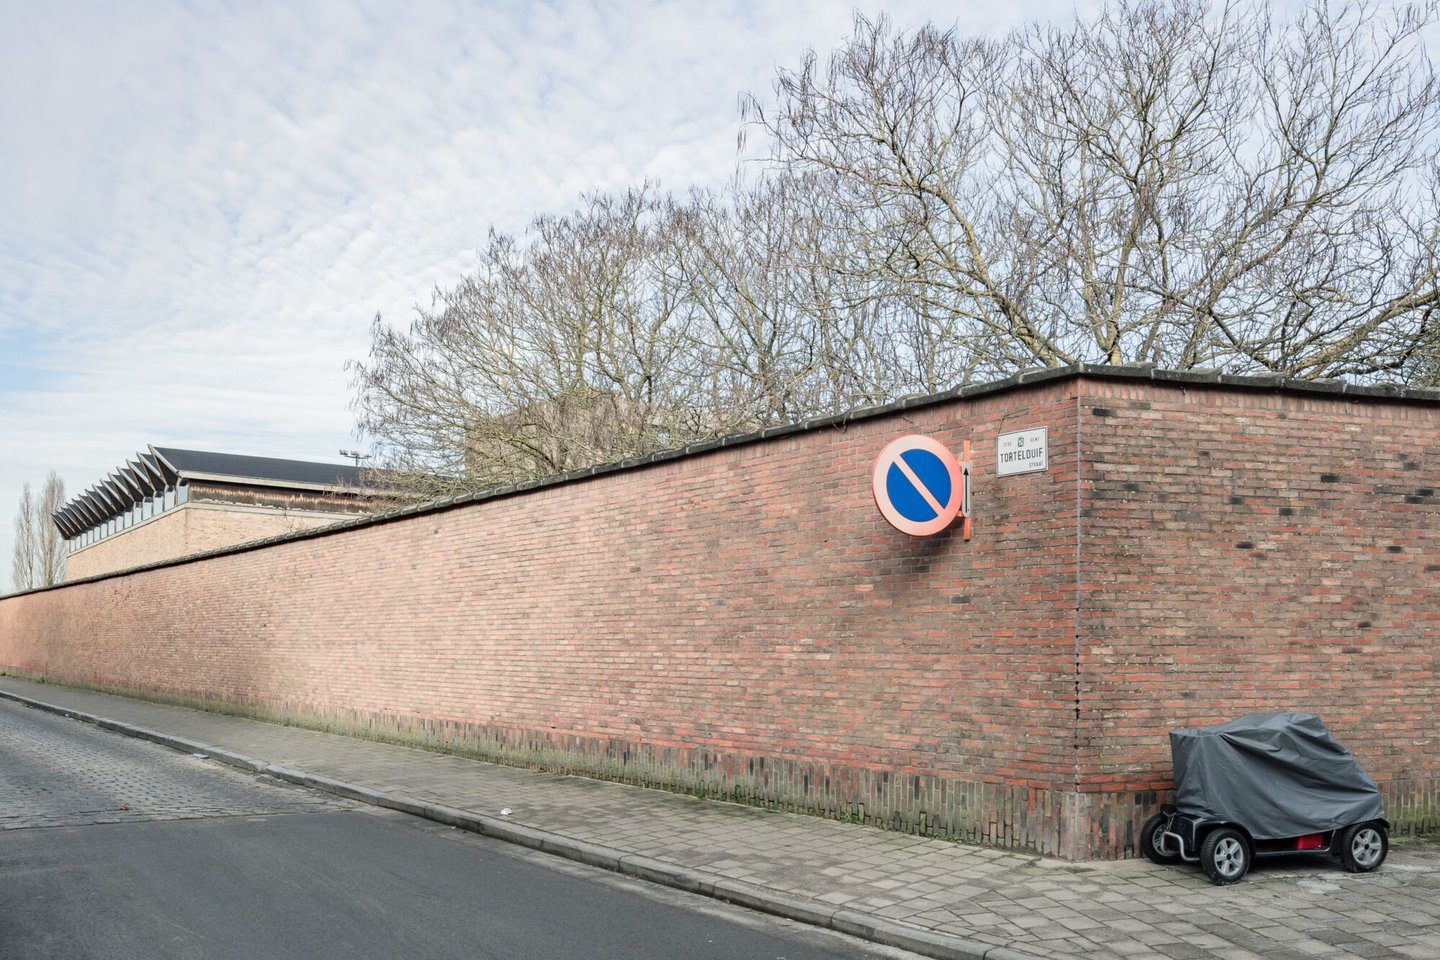 Politieacademie op voormalige site textielfabriek Filature et Tissage de L'Avenir in Gent